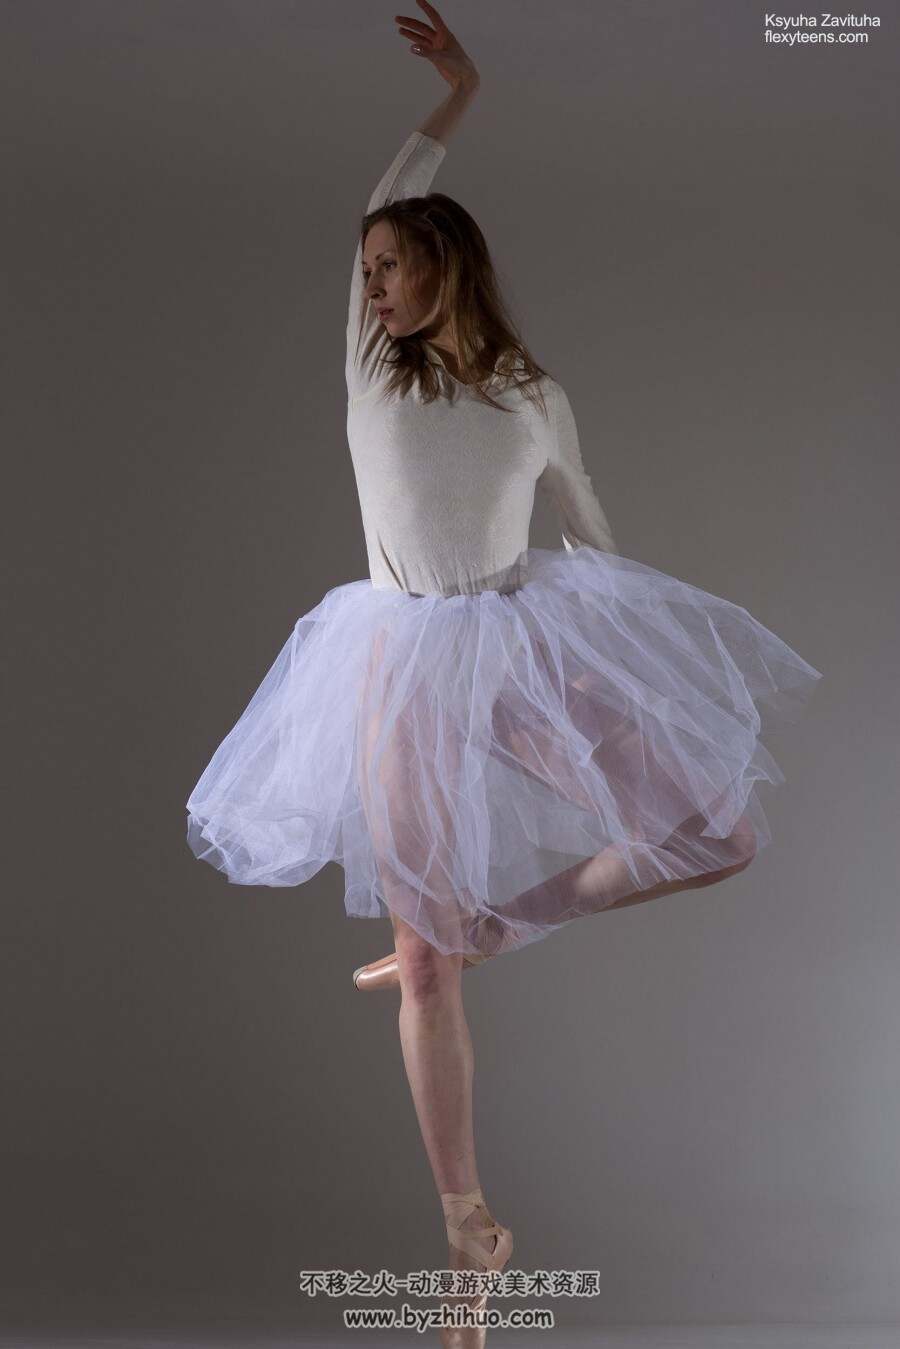 俄罗斯芭蕾模特Annett-A艺用人体芭蕾绝美姿态 高清百度网盘下载 457P